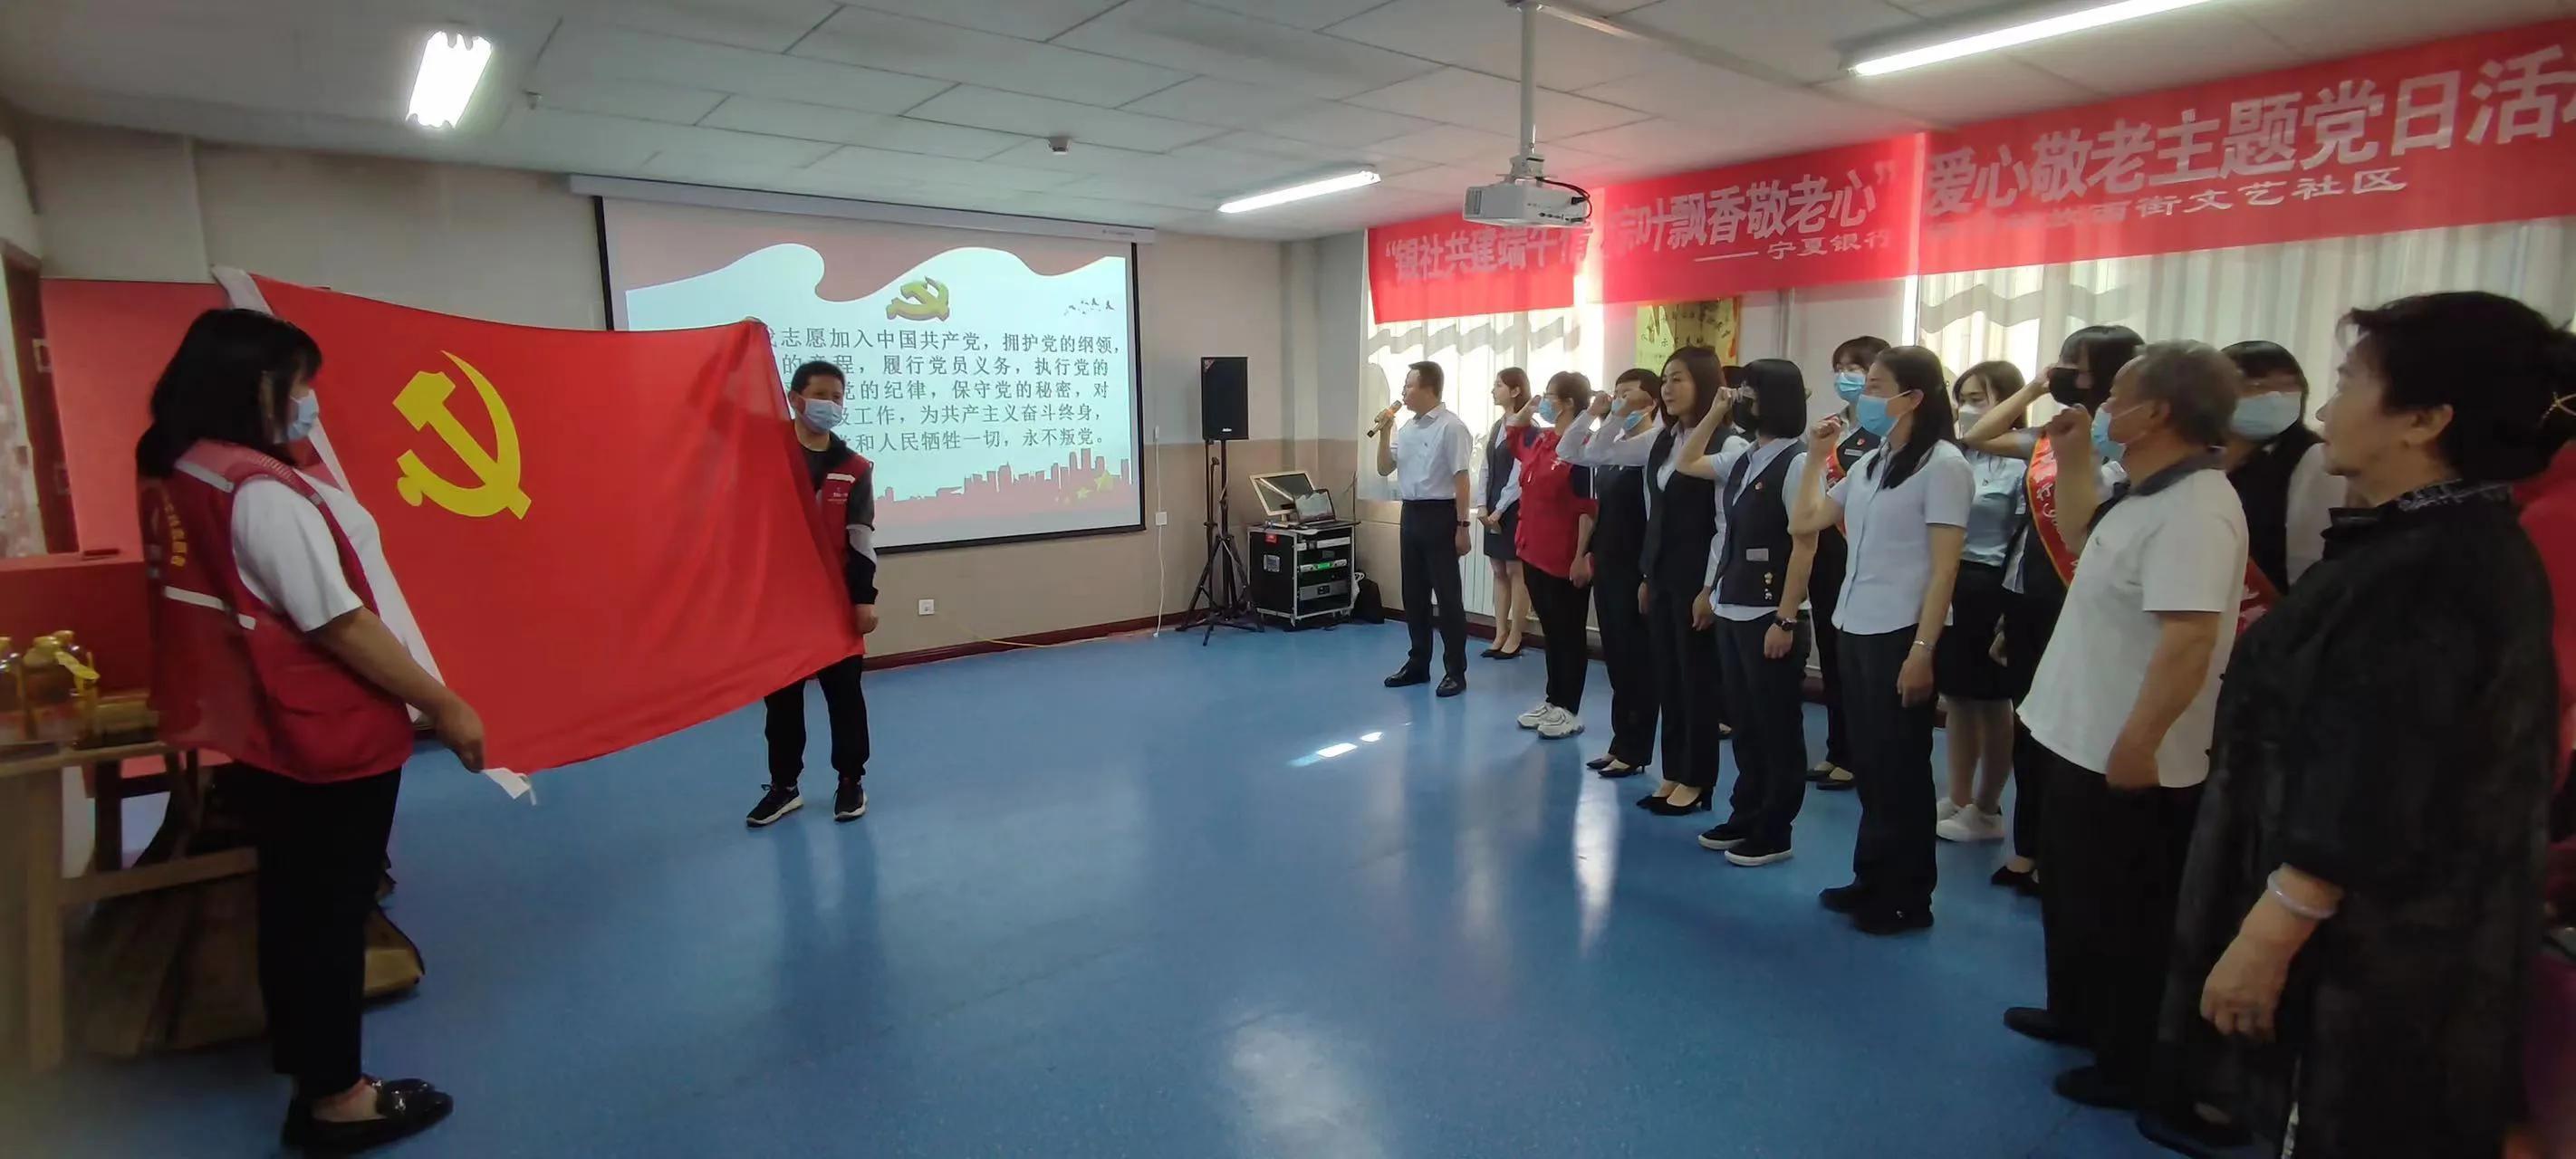 Банк Нинся и сообщество микрорайона в рамках празднования Дуаньу проводят тематические мероприятия